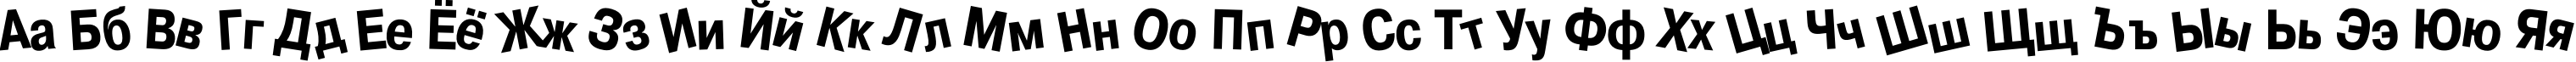 Пример написания русского алфавита шрифтом Drunk